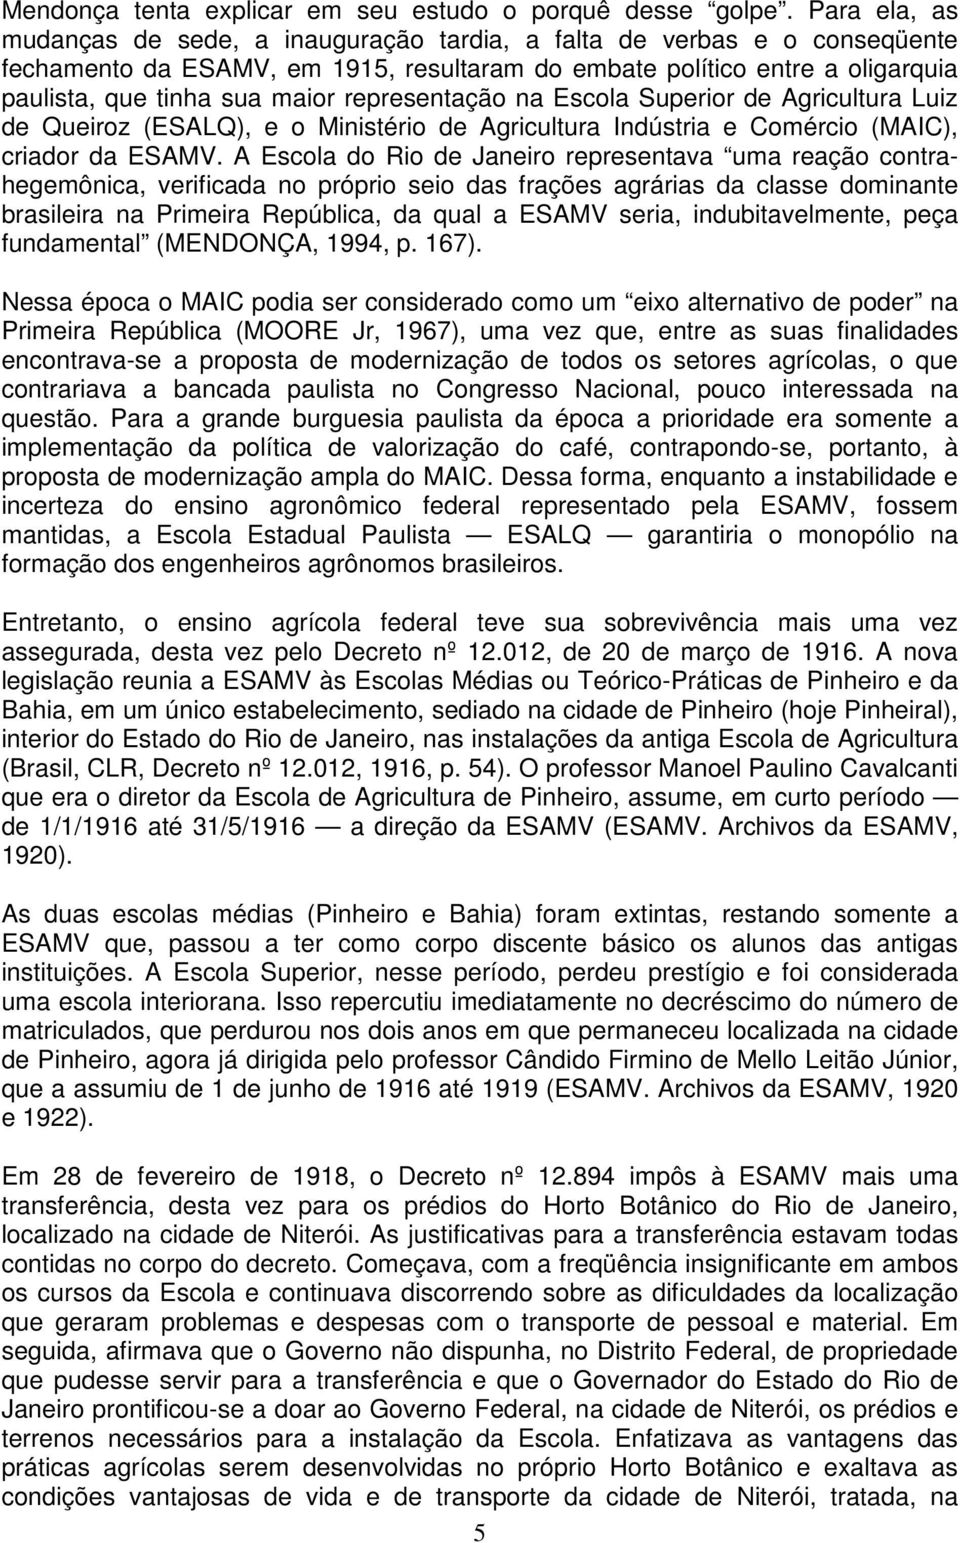 representação na Escola Superior de Agricultura Luiz de Queiroz (ESALQ), e o Ministério de Agricultura Indústria e Comércio (MAIC), criador da ESAMV.